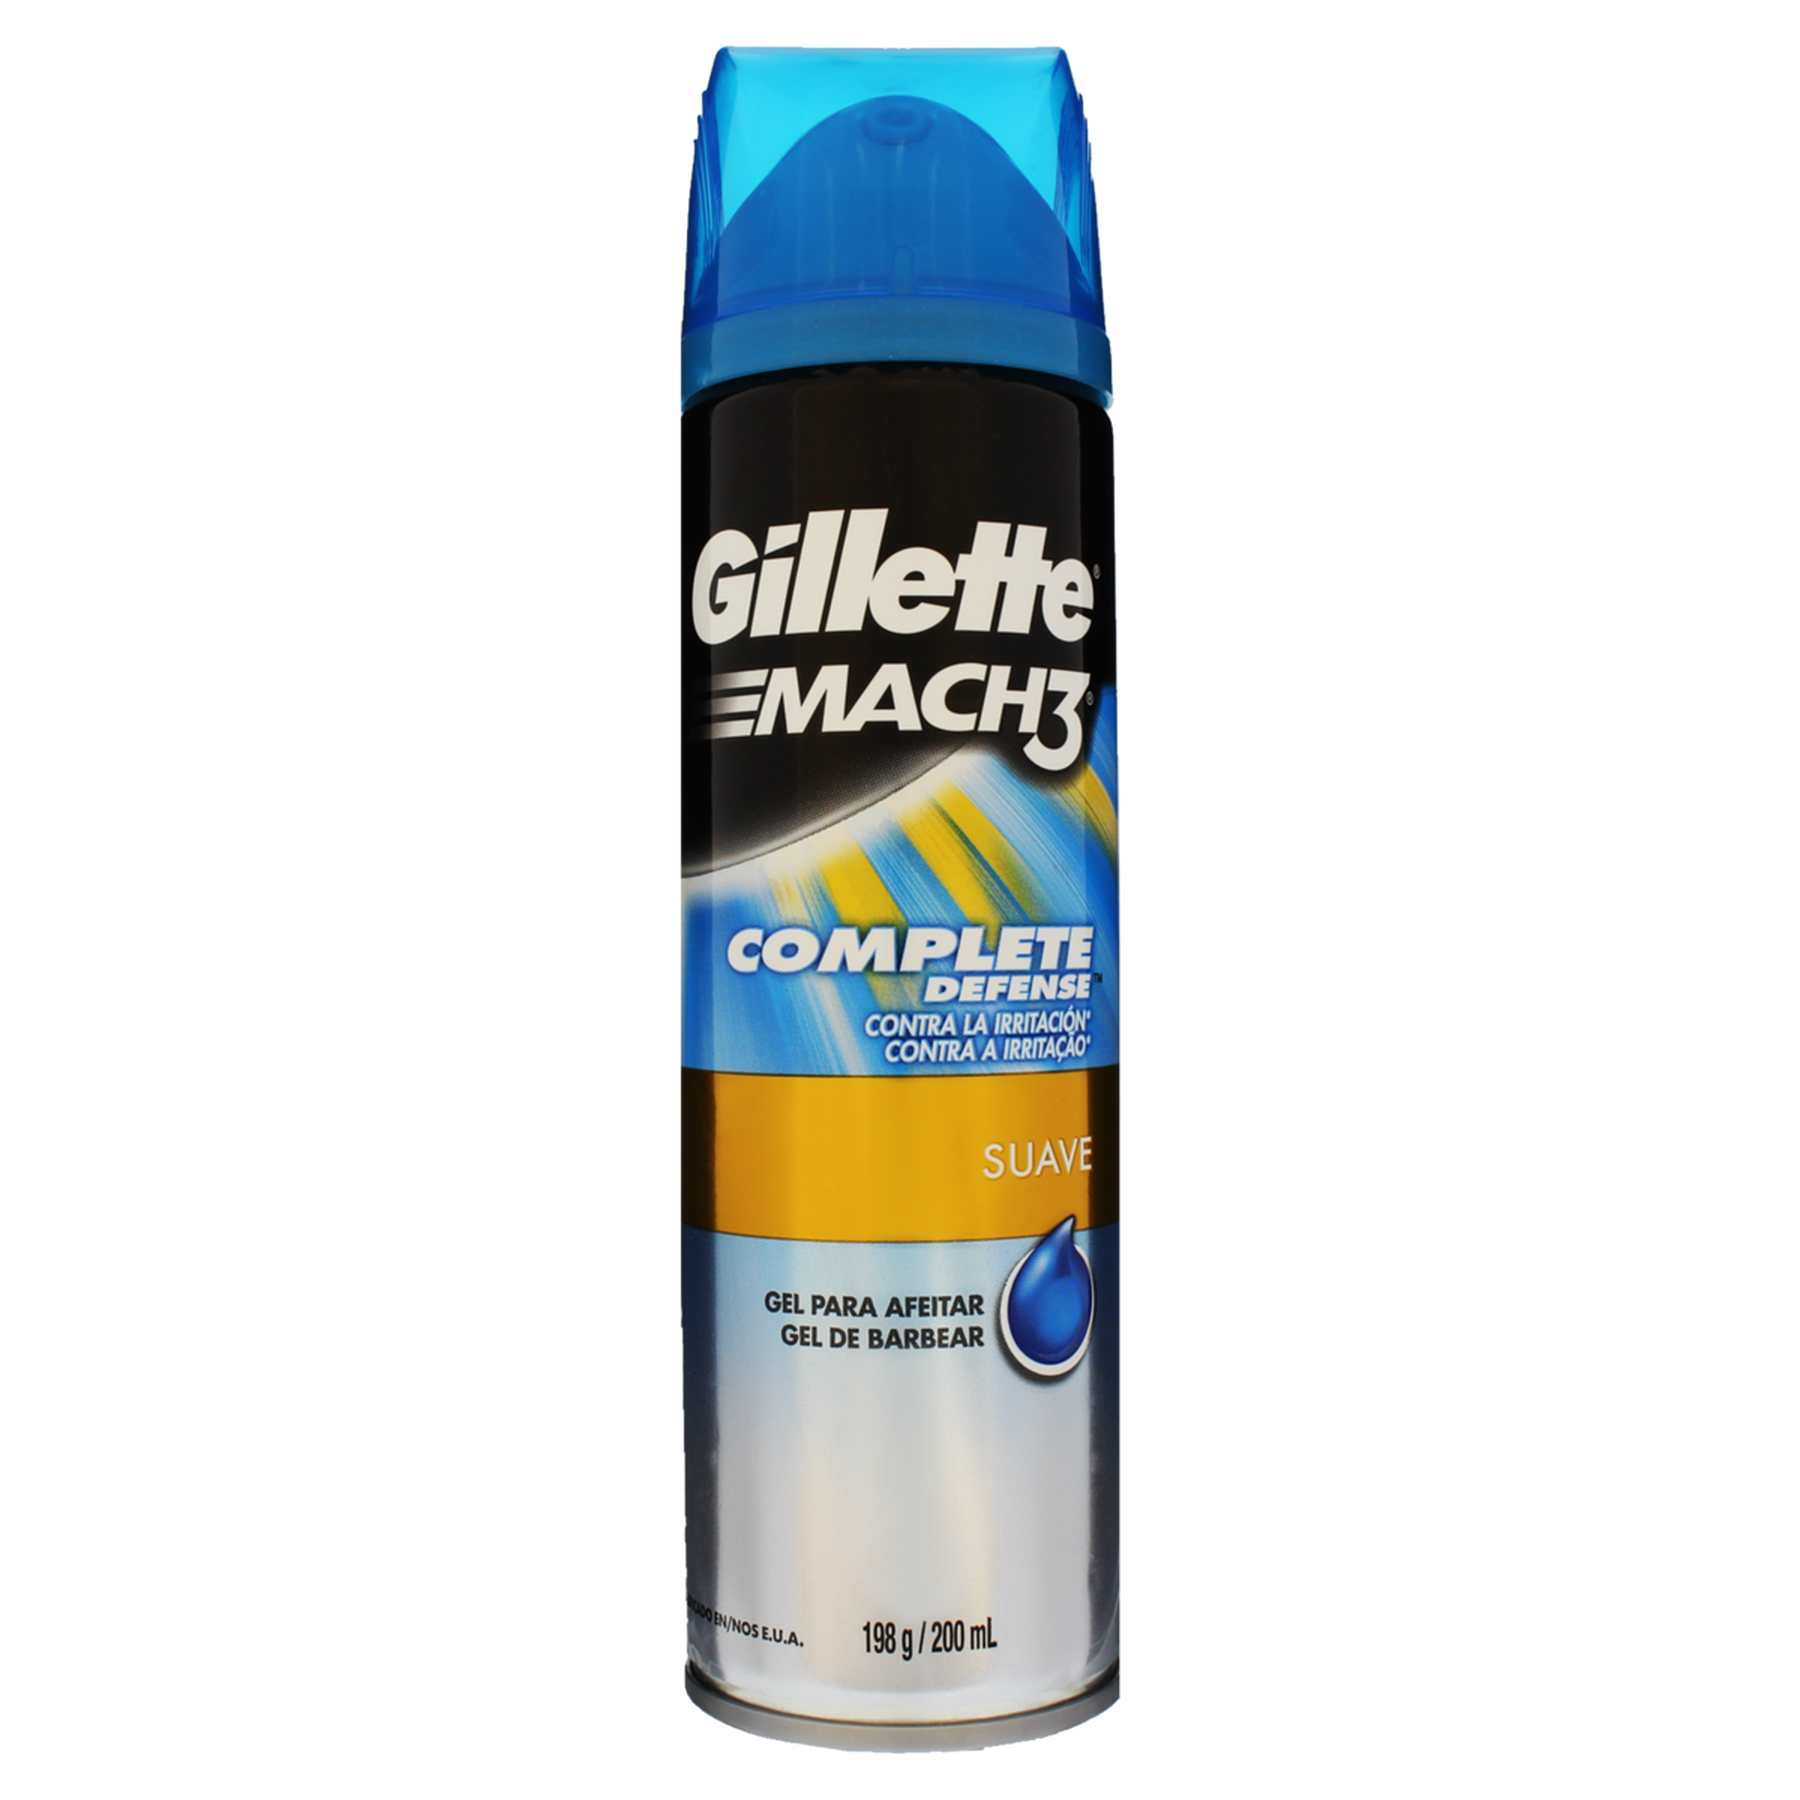 Gel de Barbear Suave Gillette Complete Defense Mach3 Frasco 198g